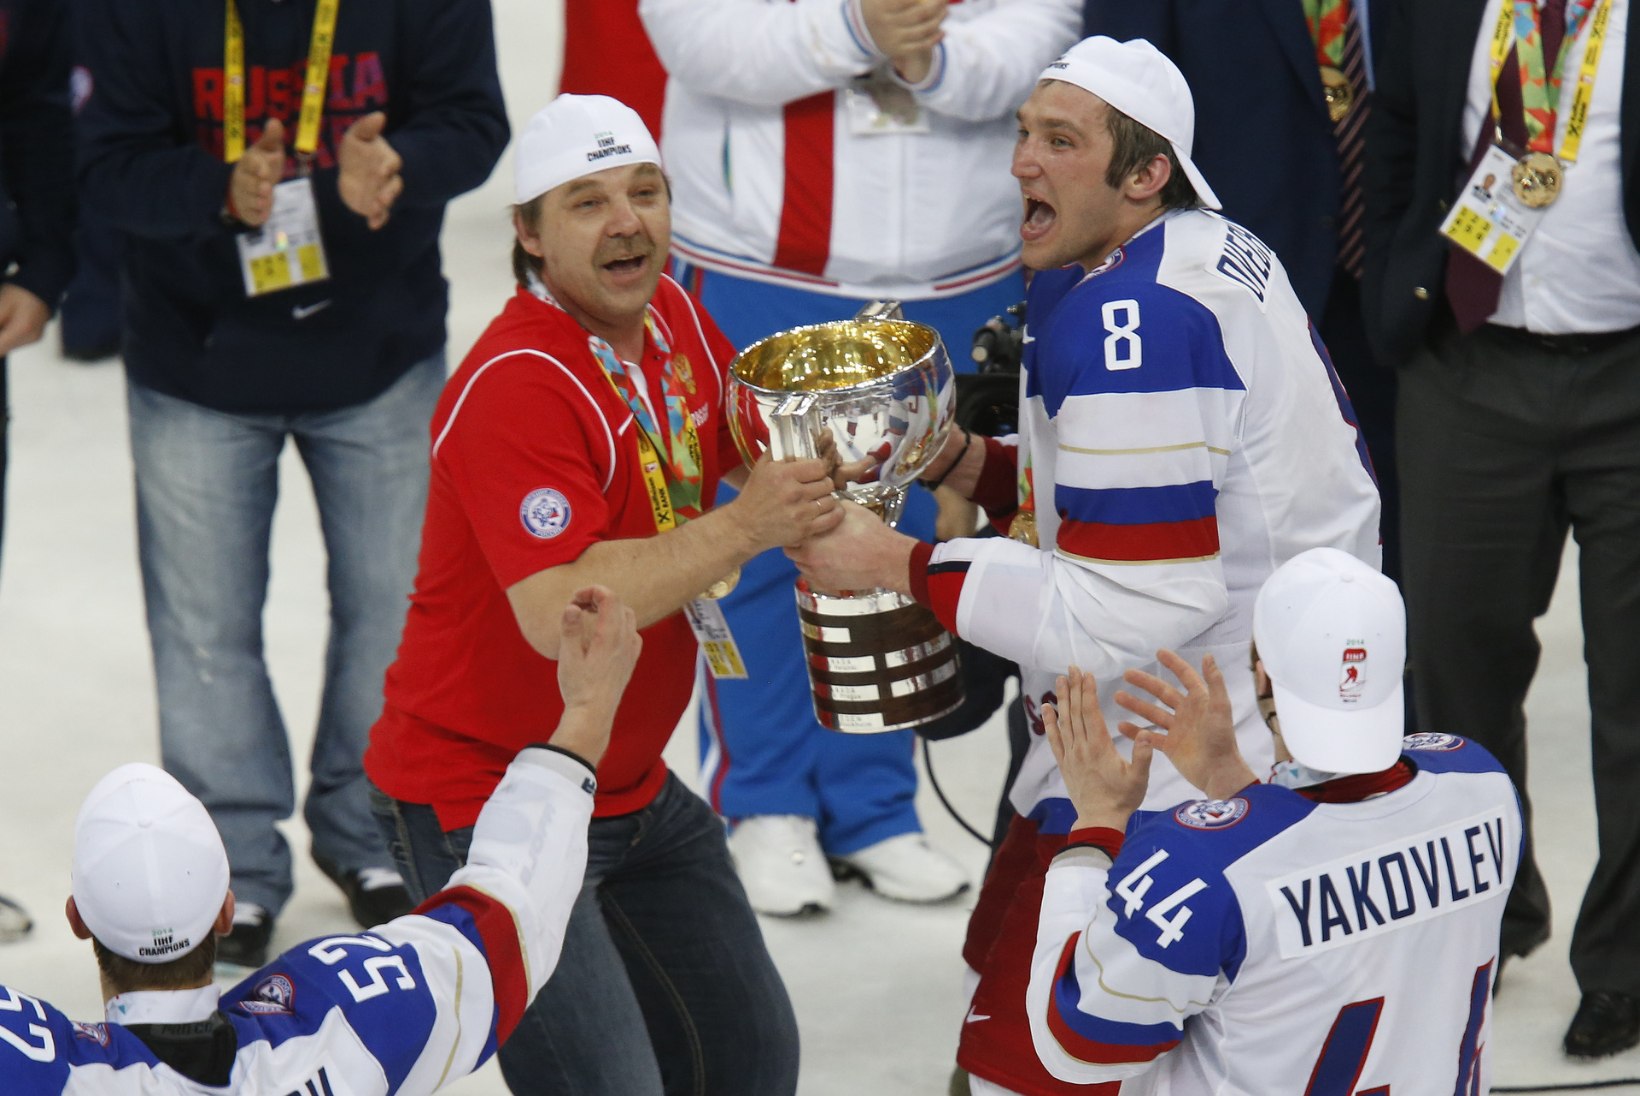 NHLi meesteta hokiturniir, alga! Ekspert: hokikuld on venelastele dopingumöllu taustal kõige ihaldatum